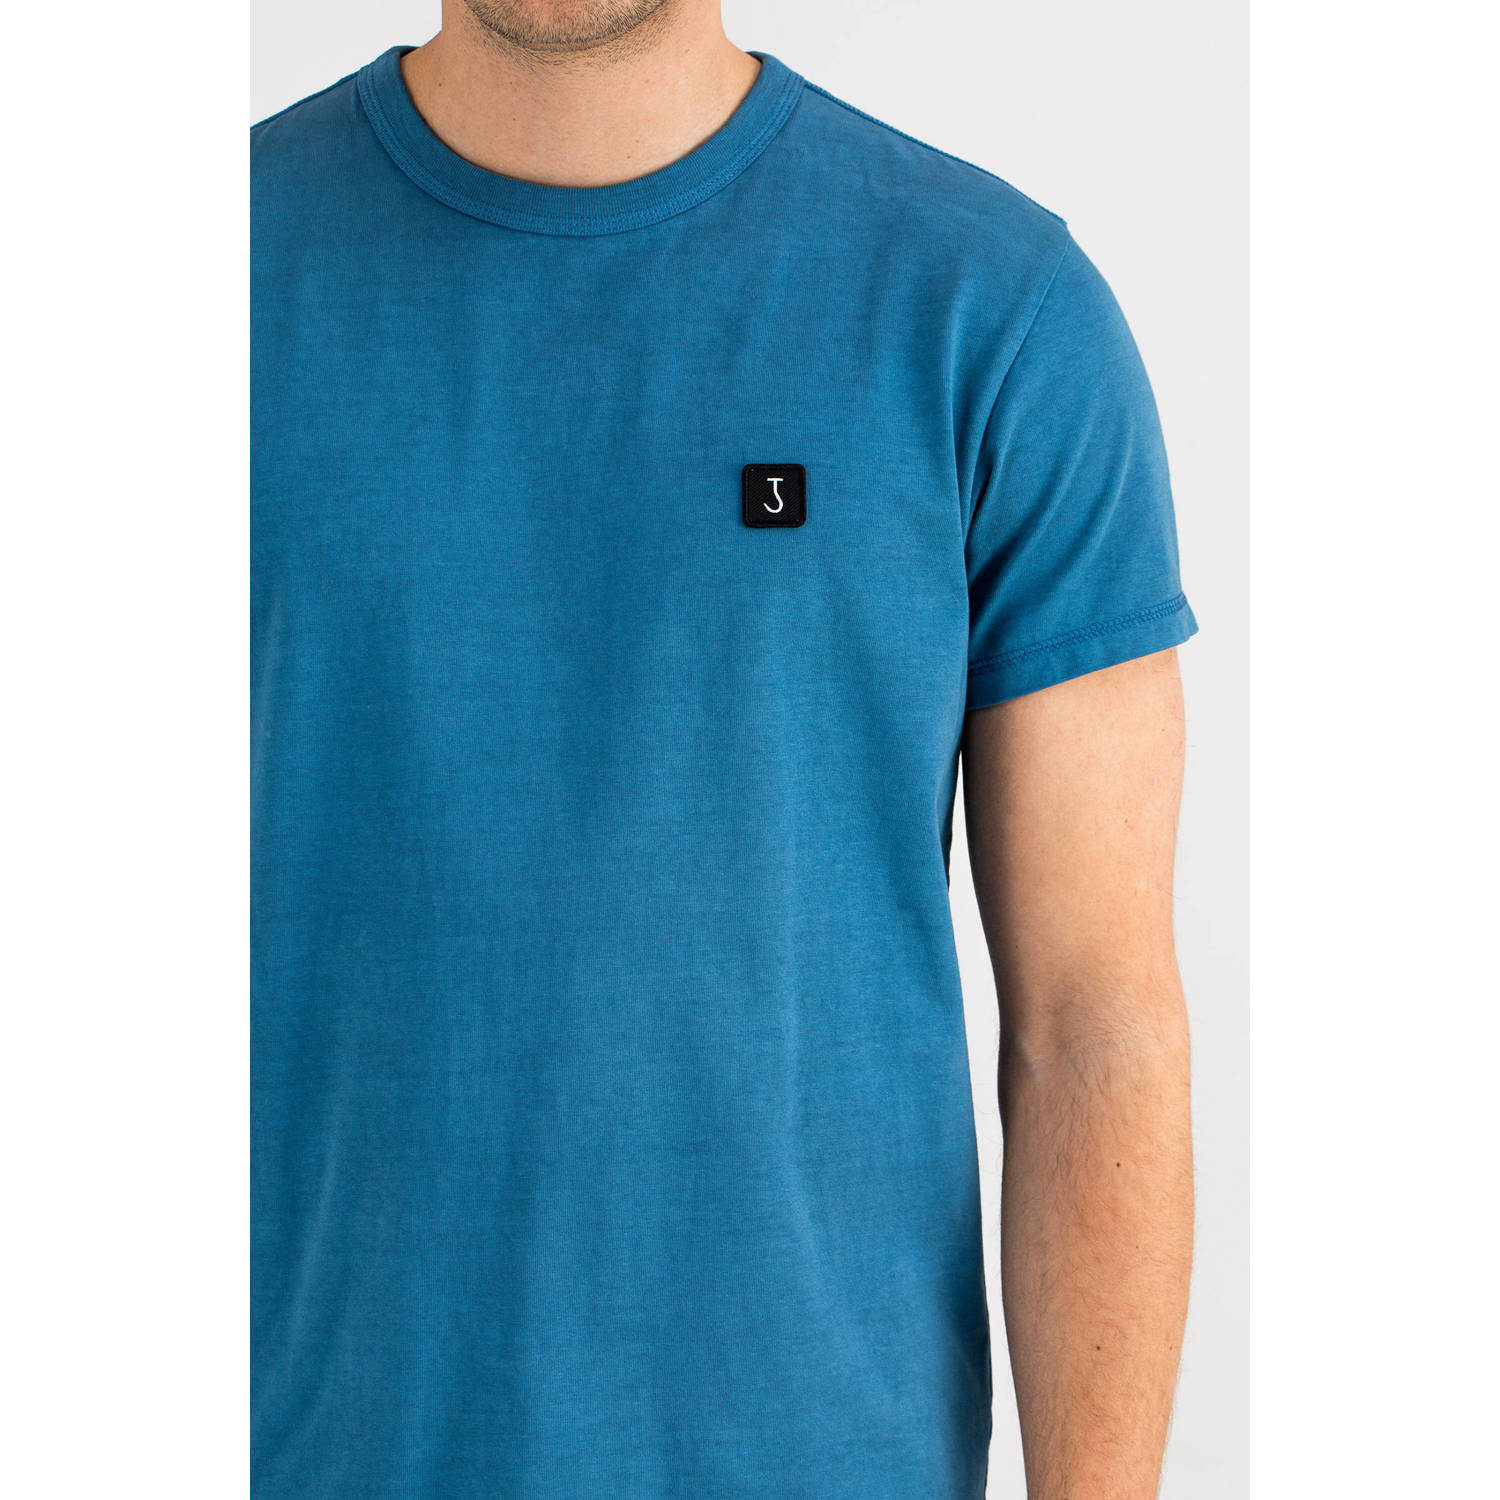 Butcher of Blue regular fit T-shirt Army met logo arrow blue